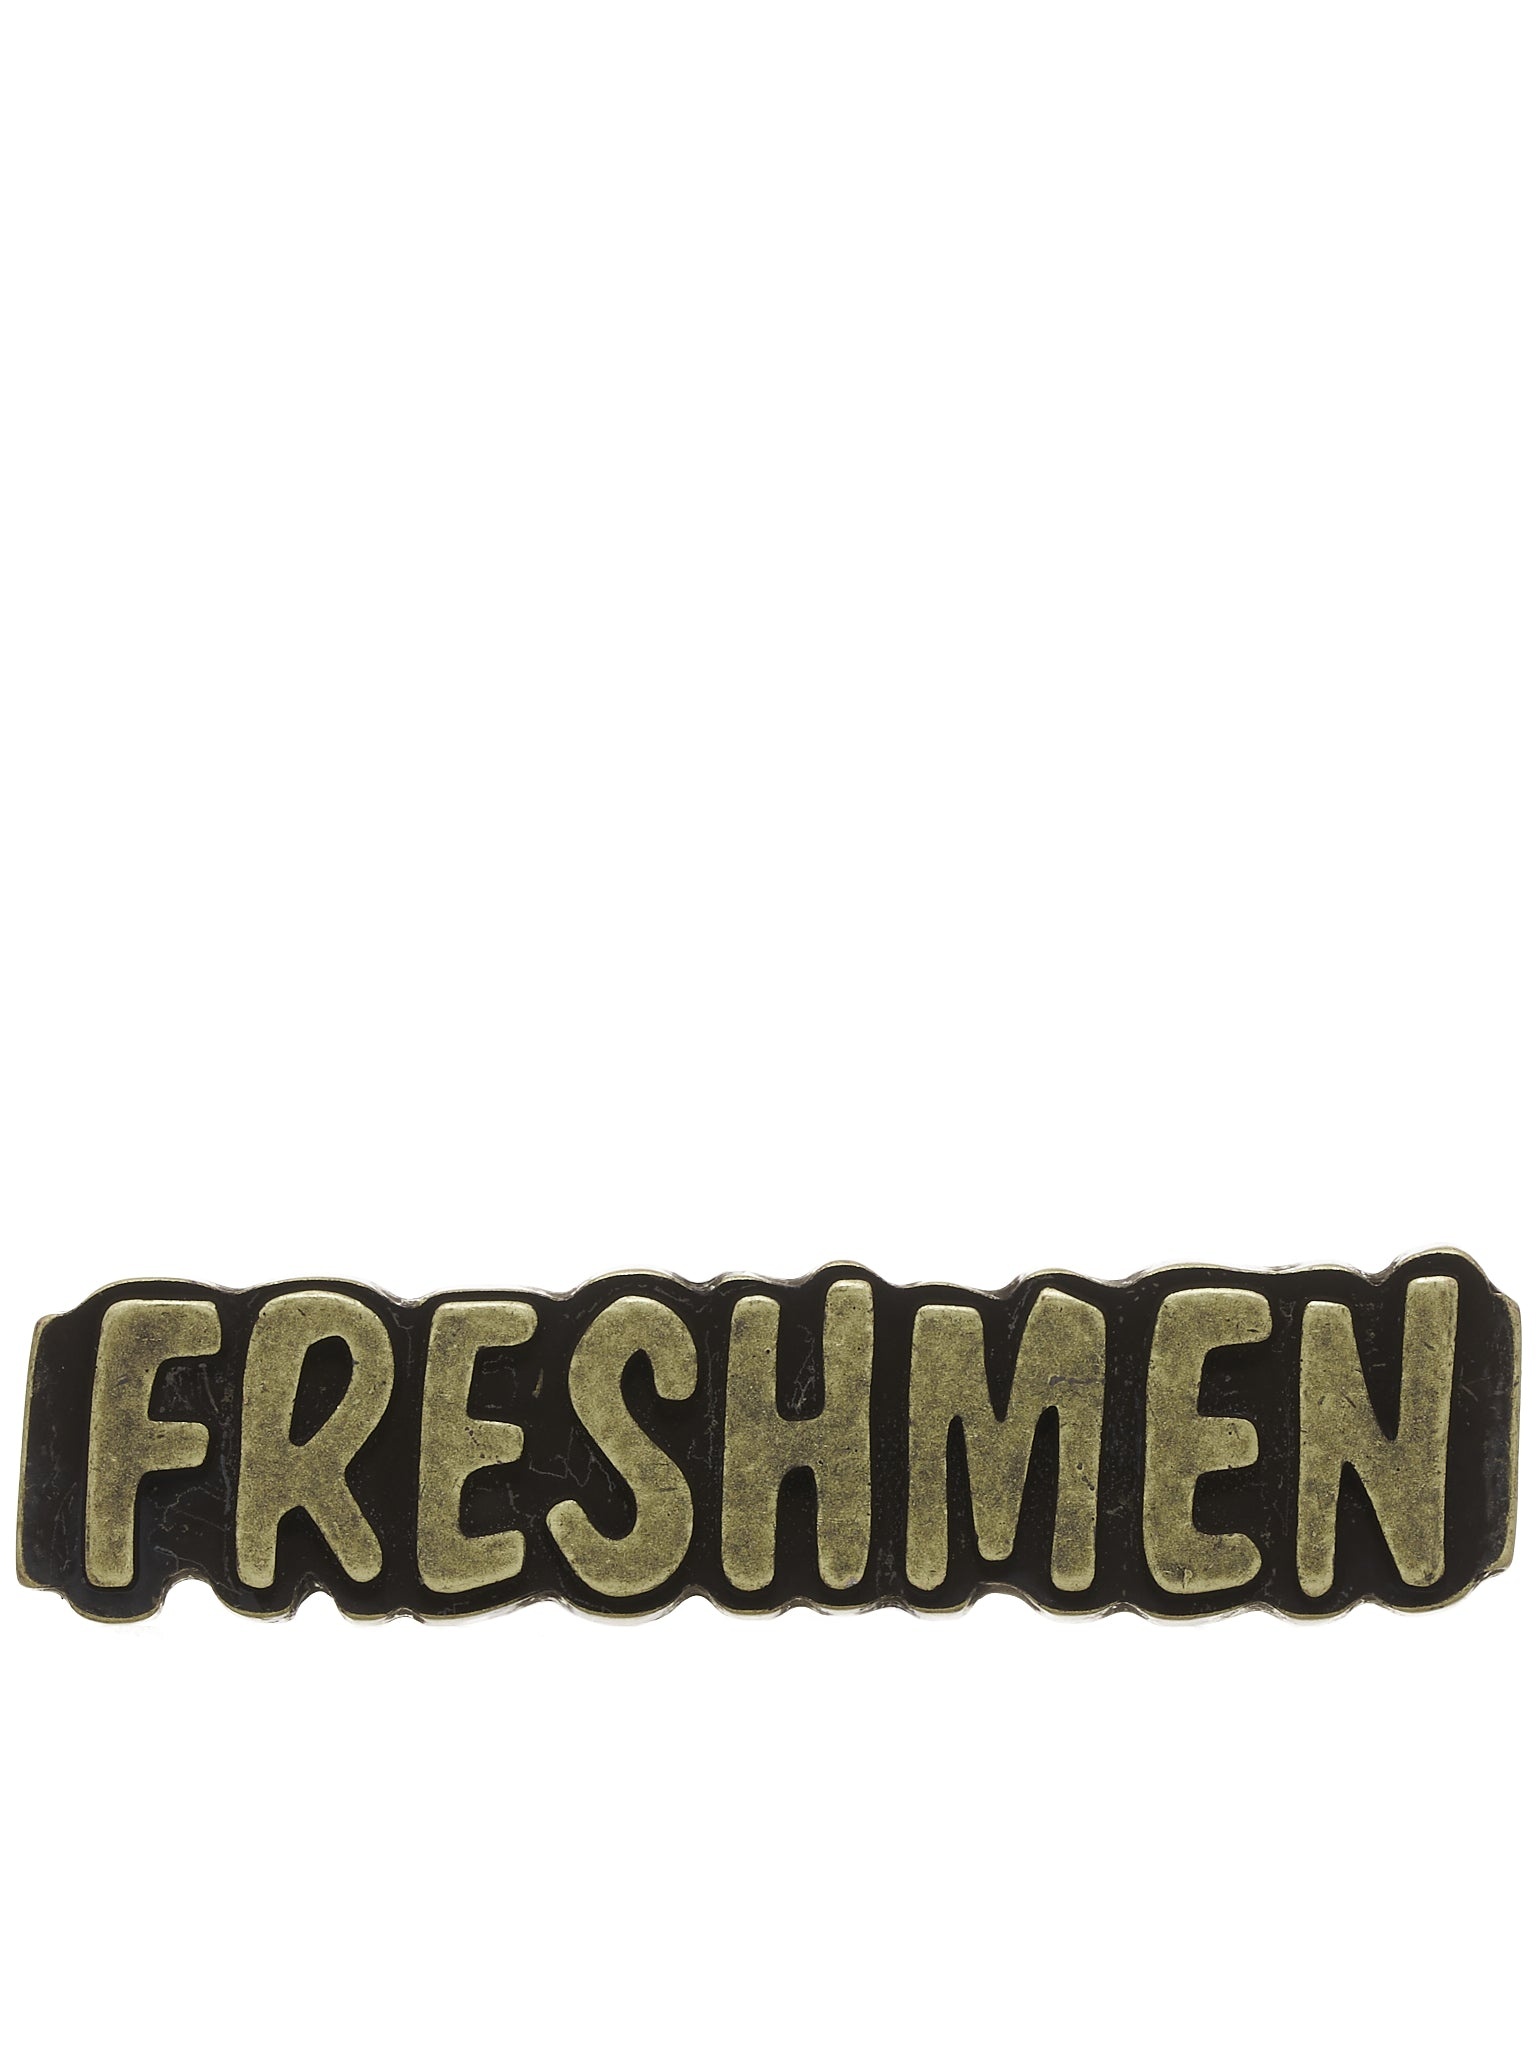 Freshman Pin - 1